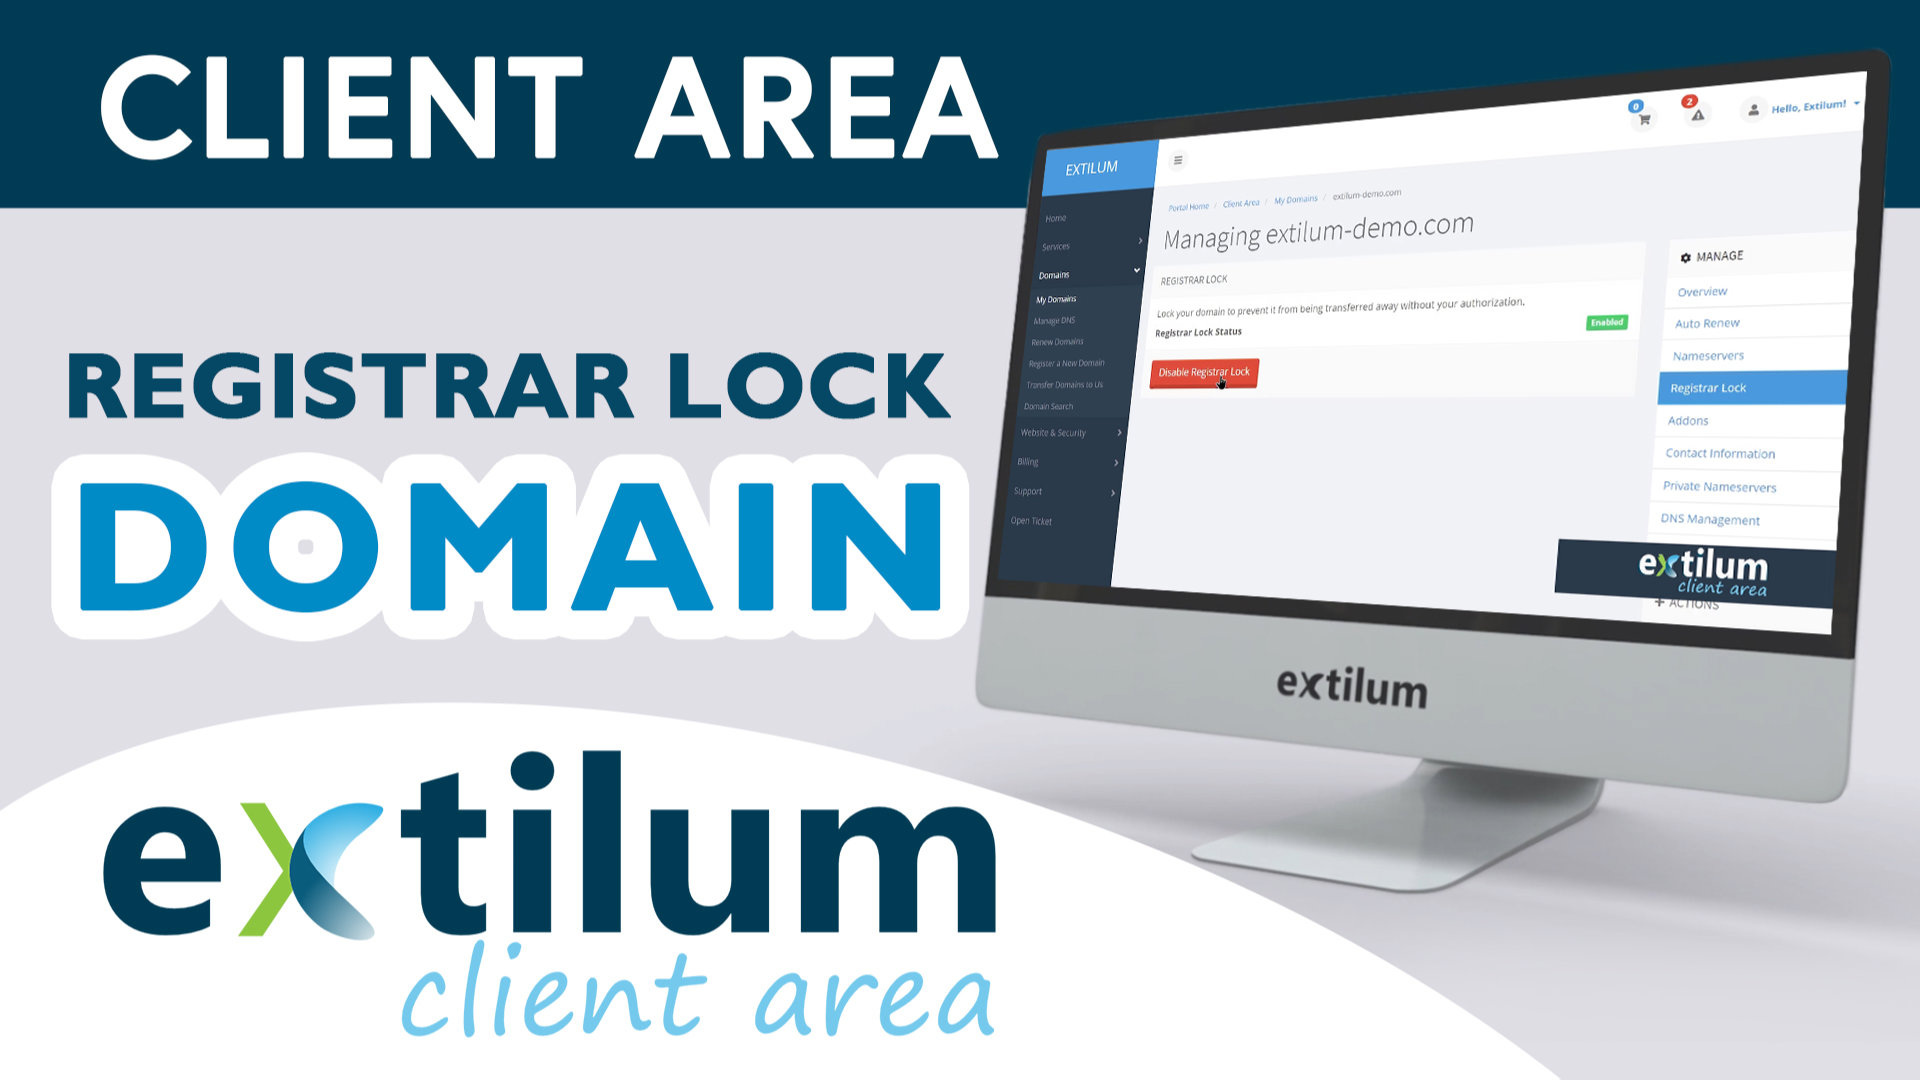 Extilum Client Area Domain registrar Lock